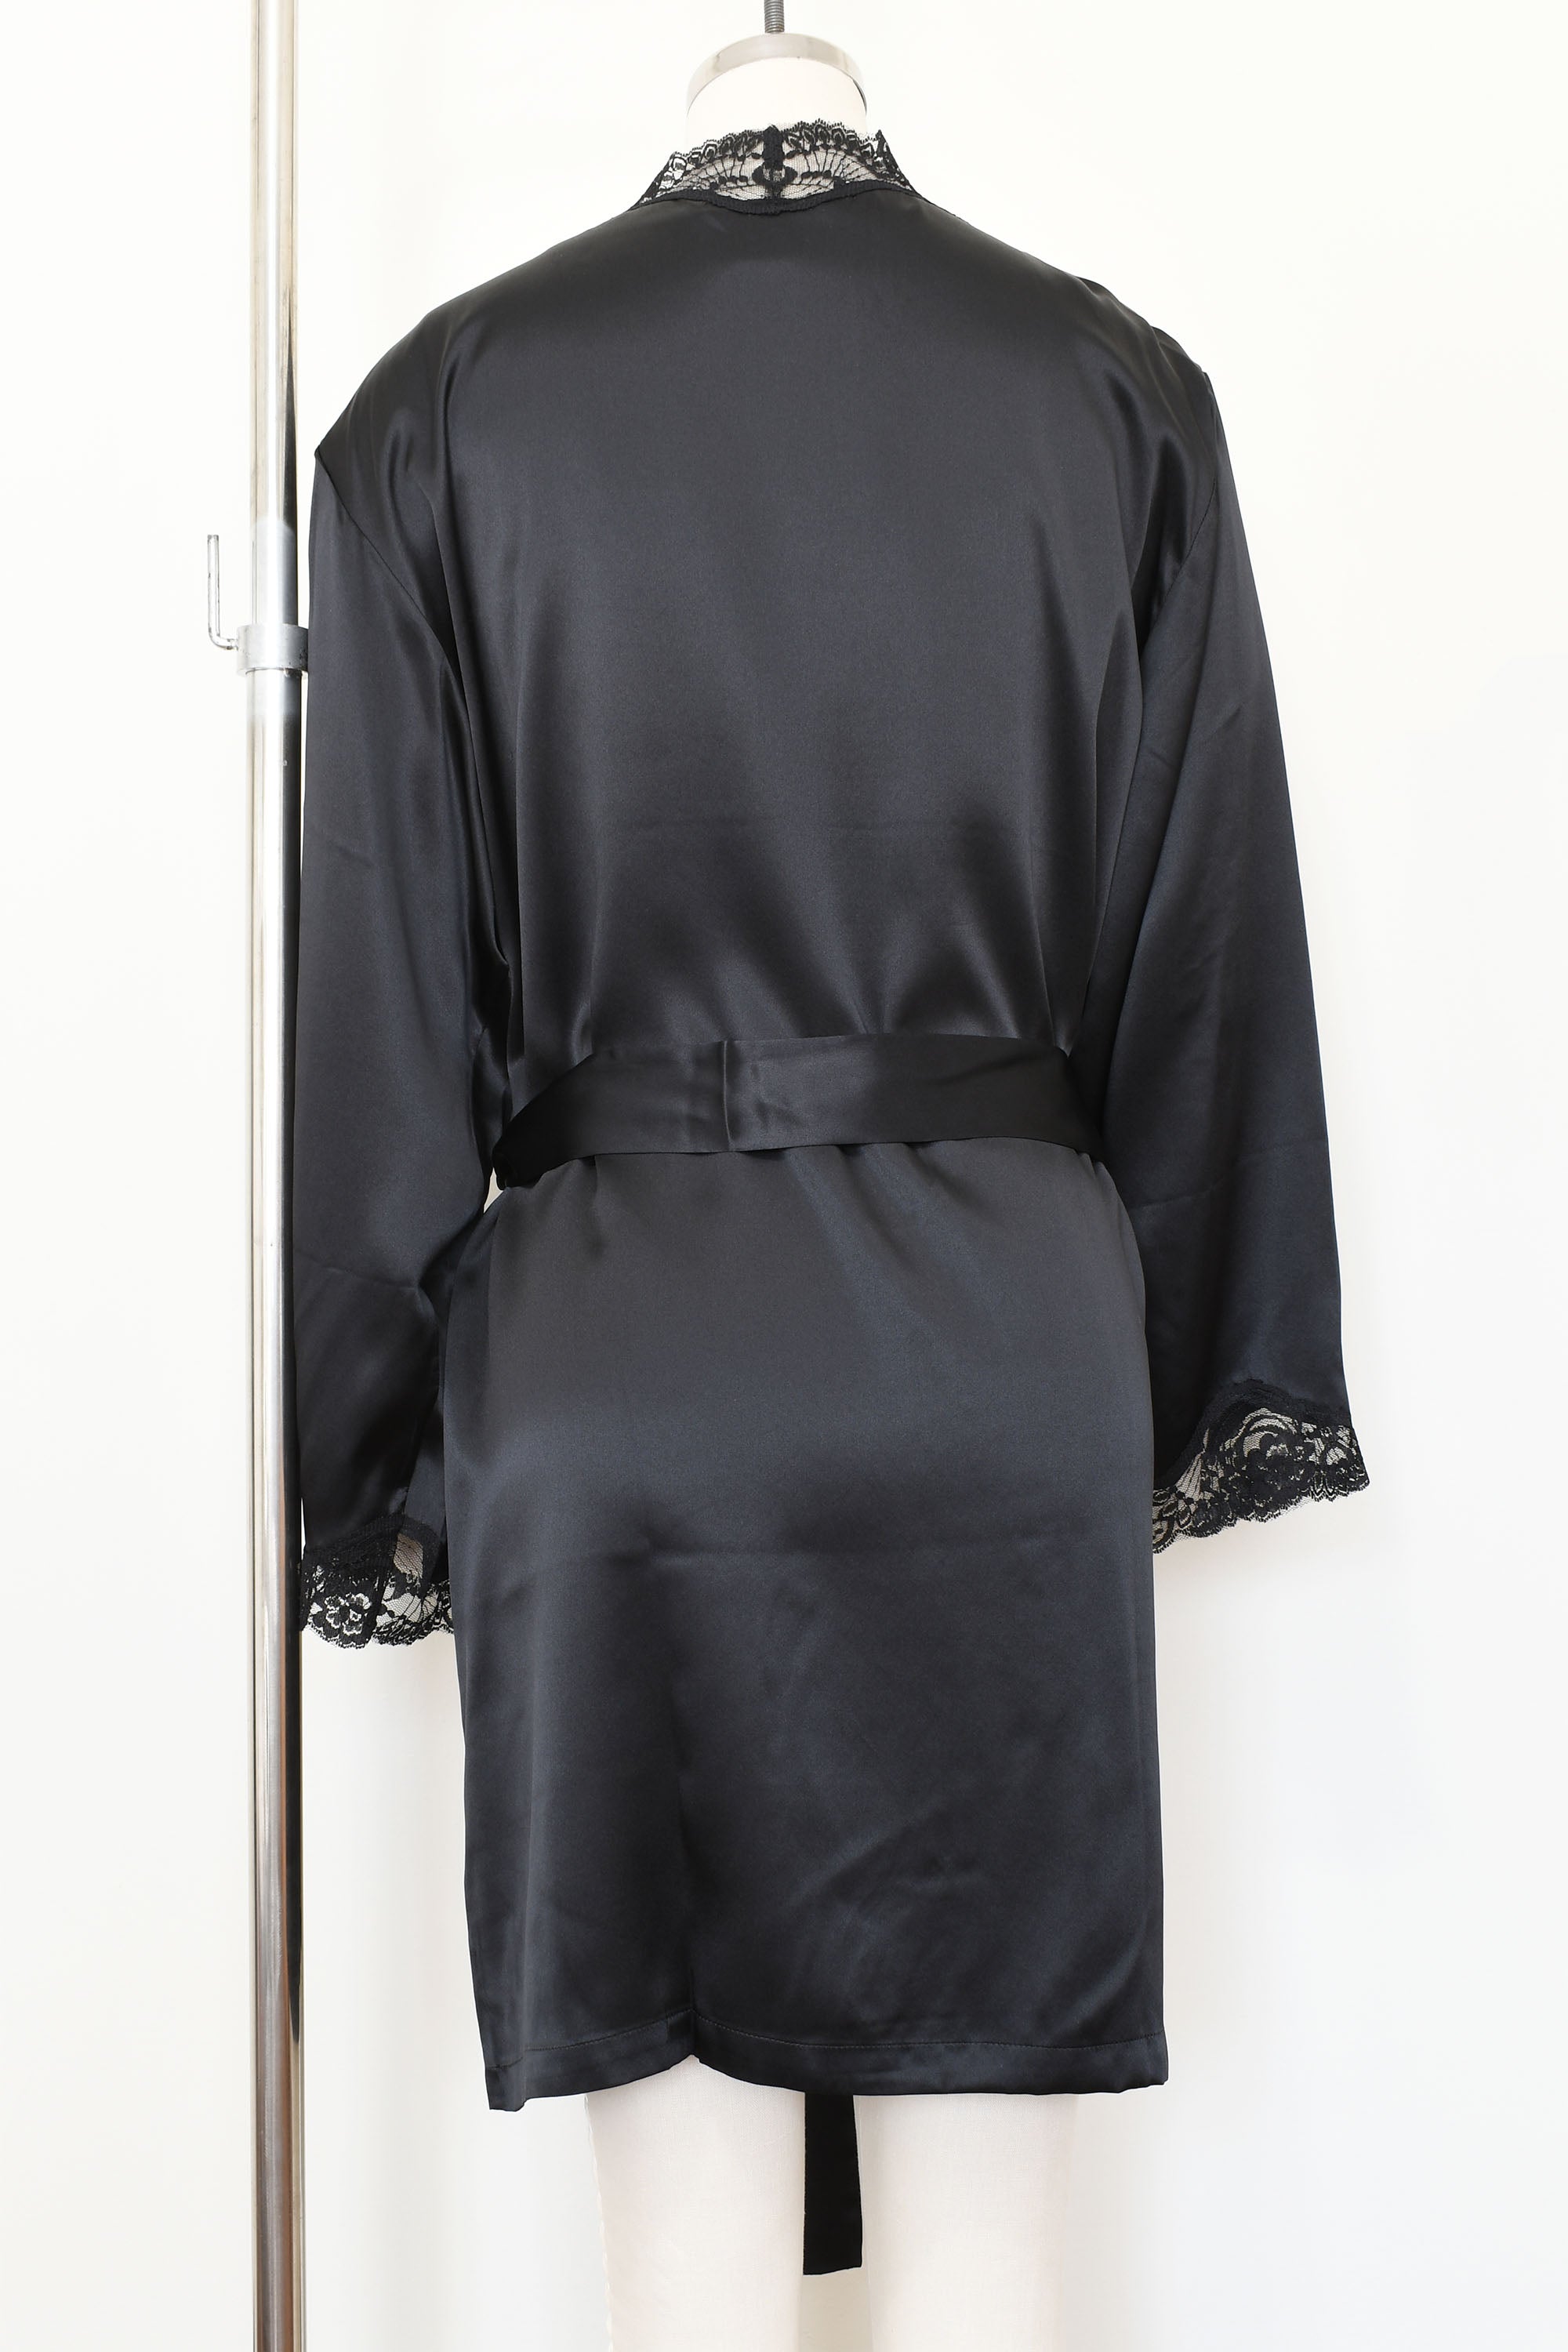 Women's Silk Sleepwear 100% Silk Robe with lace, LH006, M